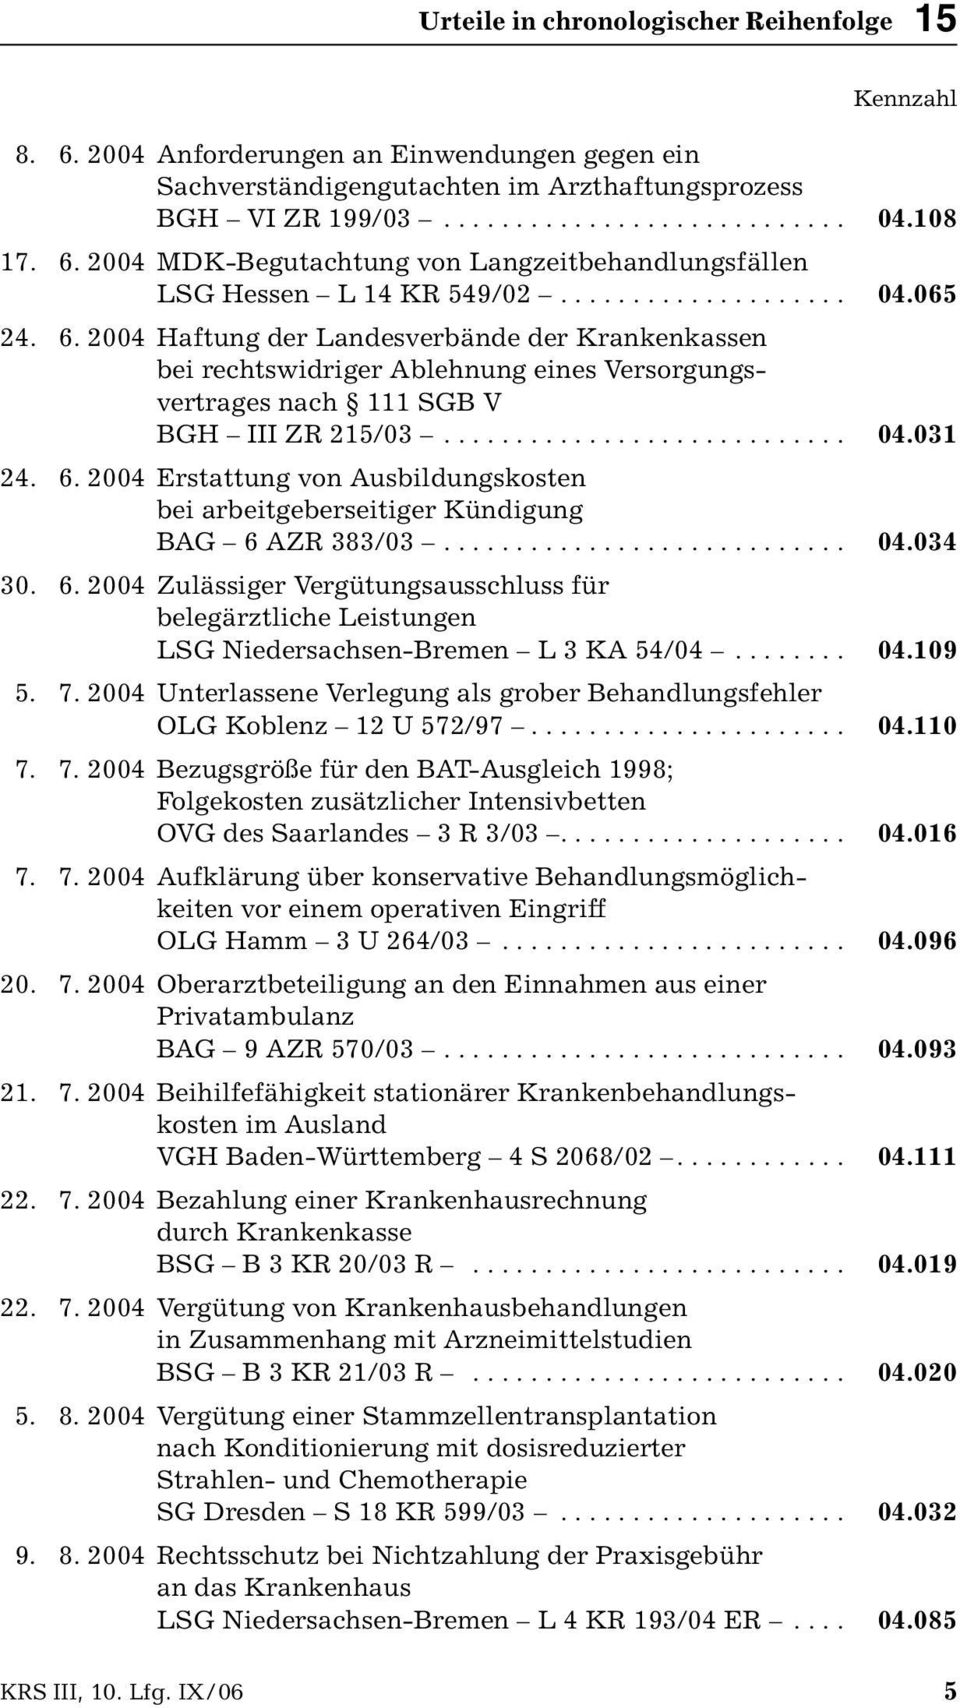 6. 2004 Erstattung von Ausbildungskosten bei arbeitgeberseitiger Kündigung BAG 6 AZR 383/03............................ 04.034 30. 6. 2004 Zulässiger Vergütungsausschluss für belegärztliche Leistungen LSG Niedersachsen-Bremen L 3 KA 54/04.